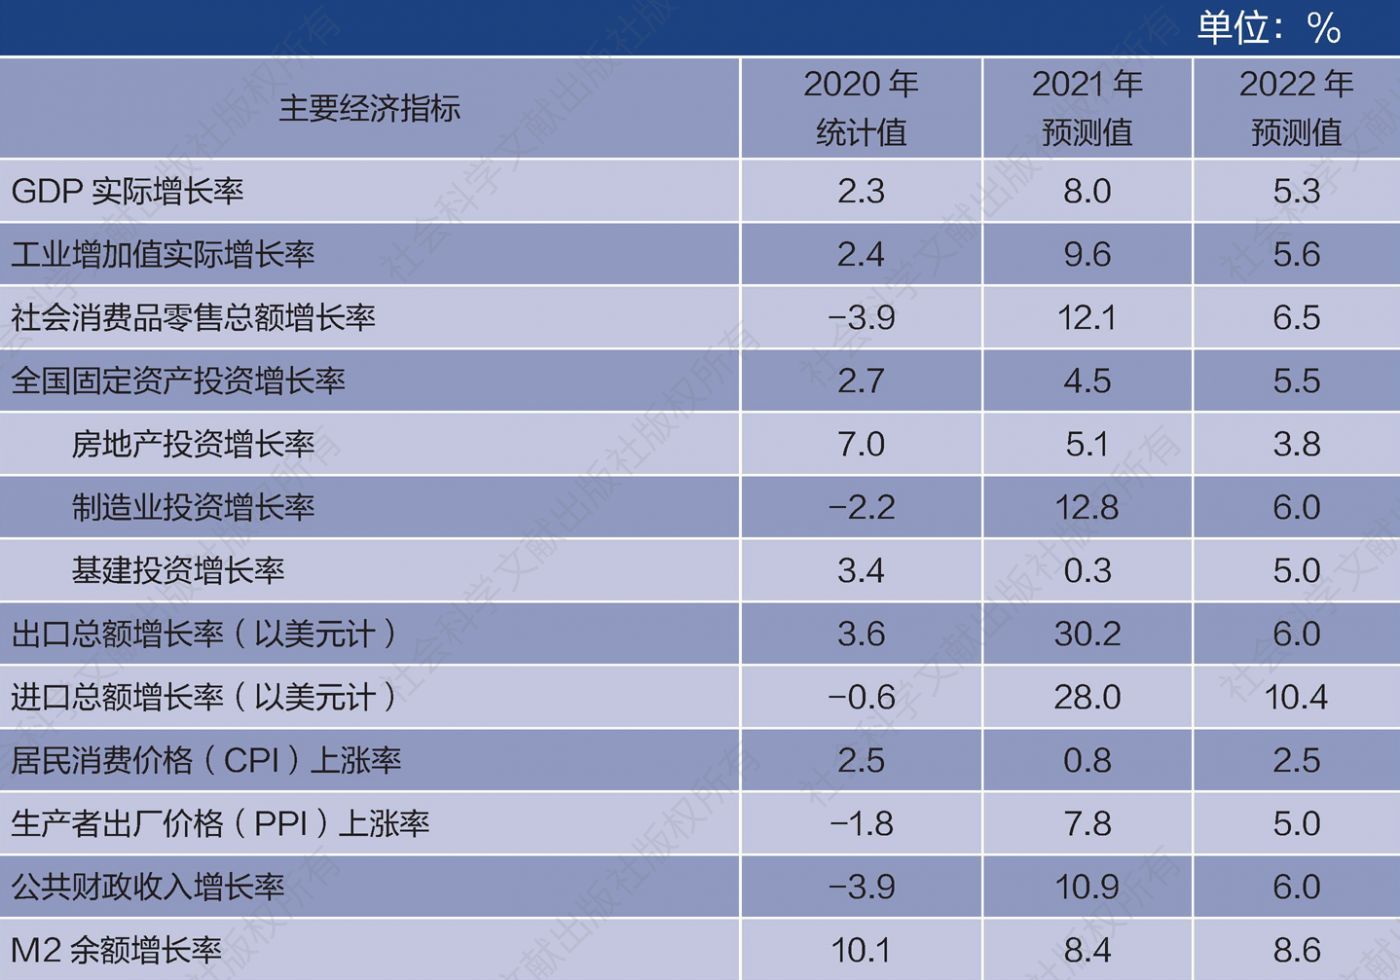 表1 2021～2022年中国经济主要指标预测